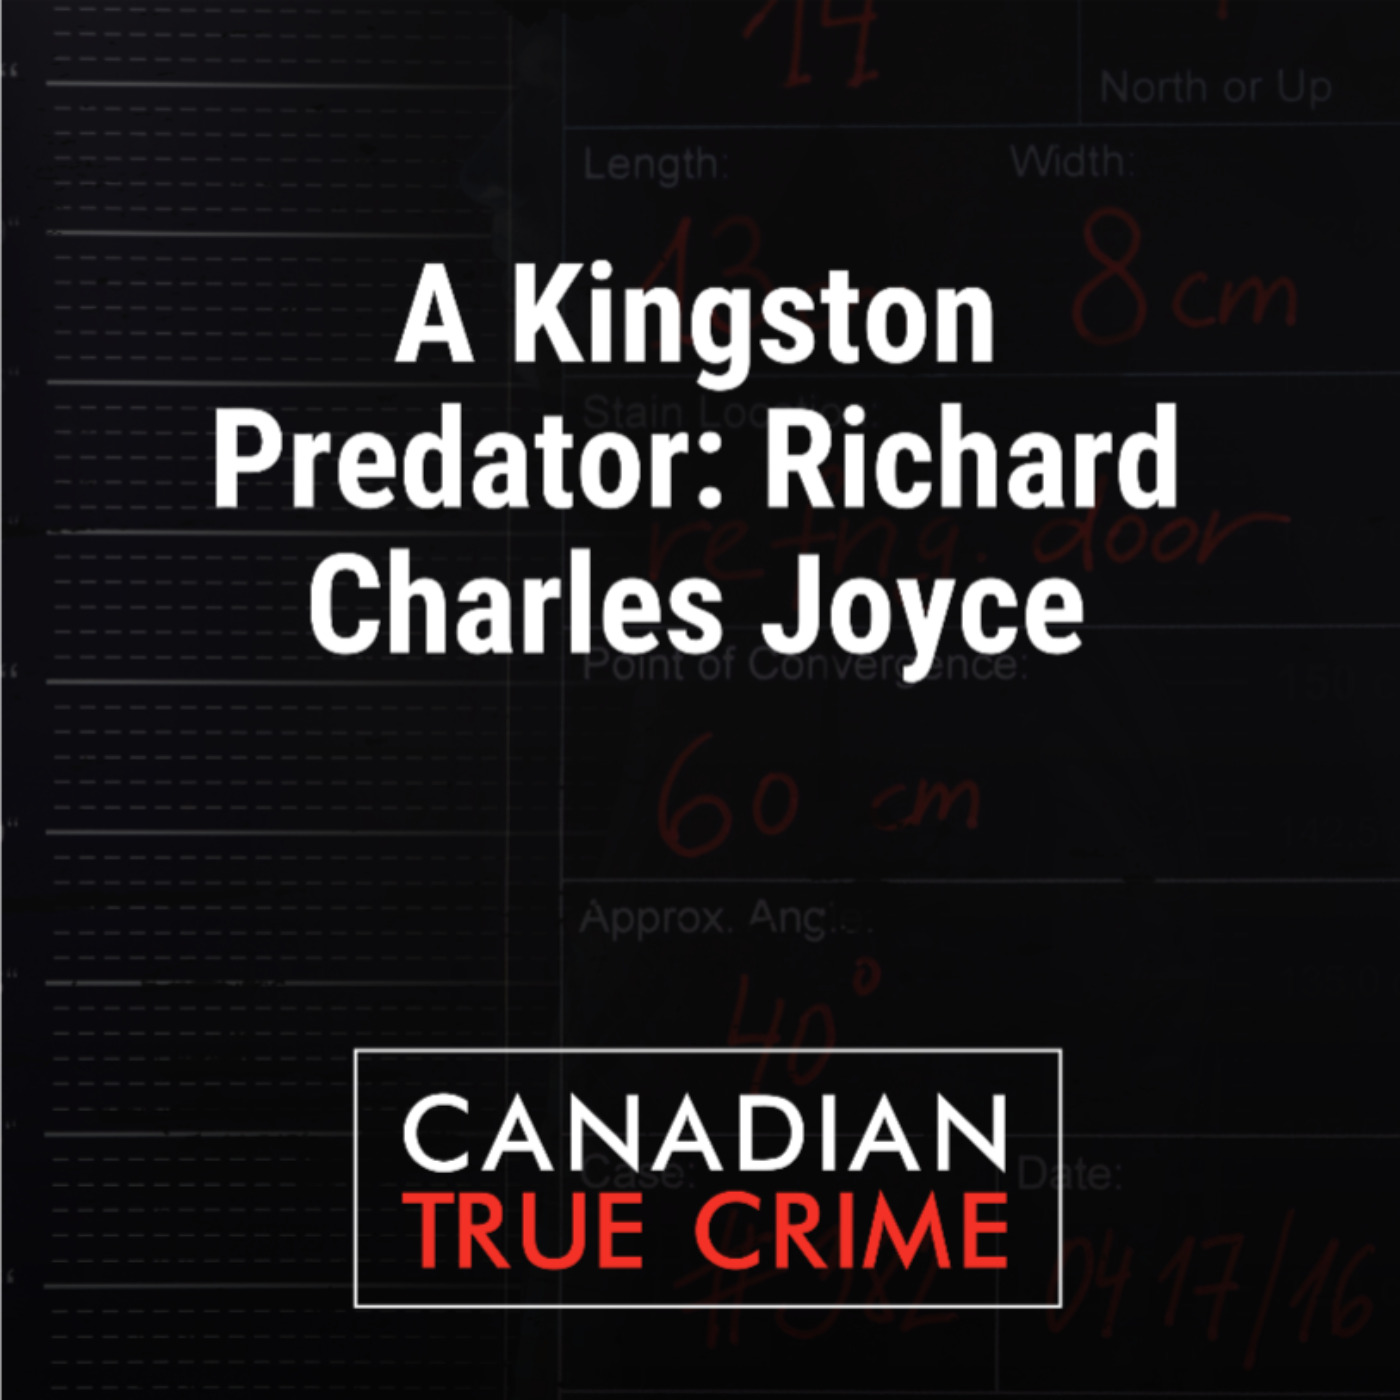 A Kingston Predator: Richard Charles Joyce—Part 2